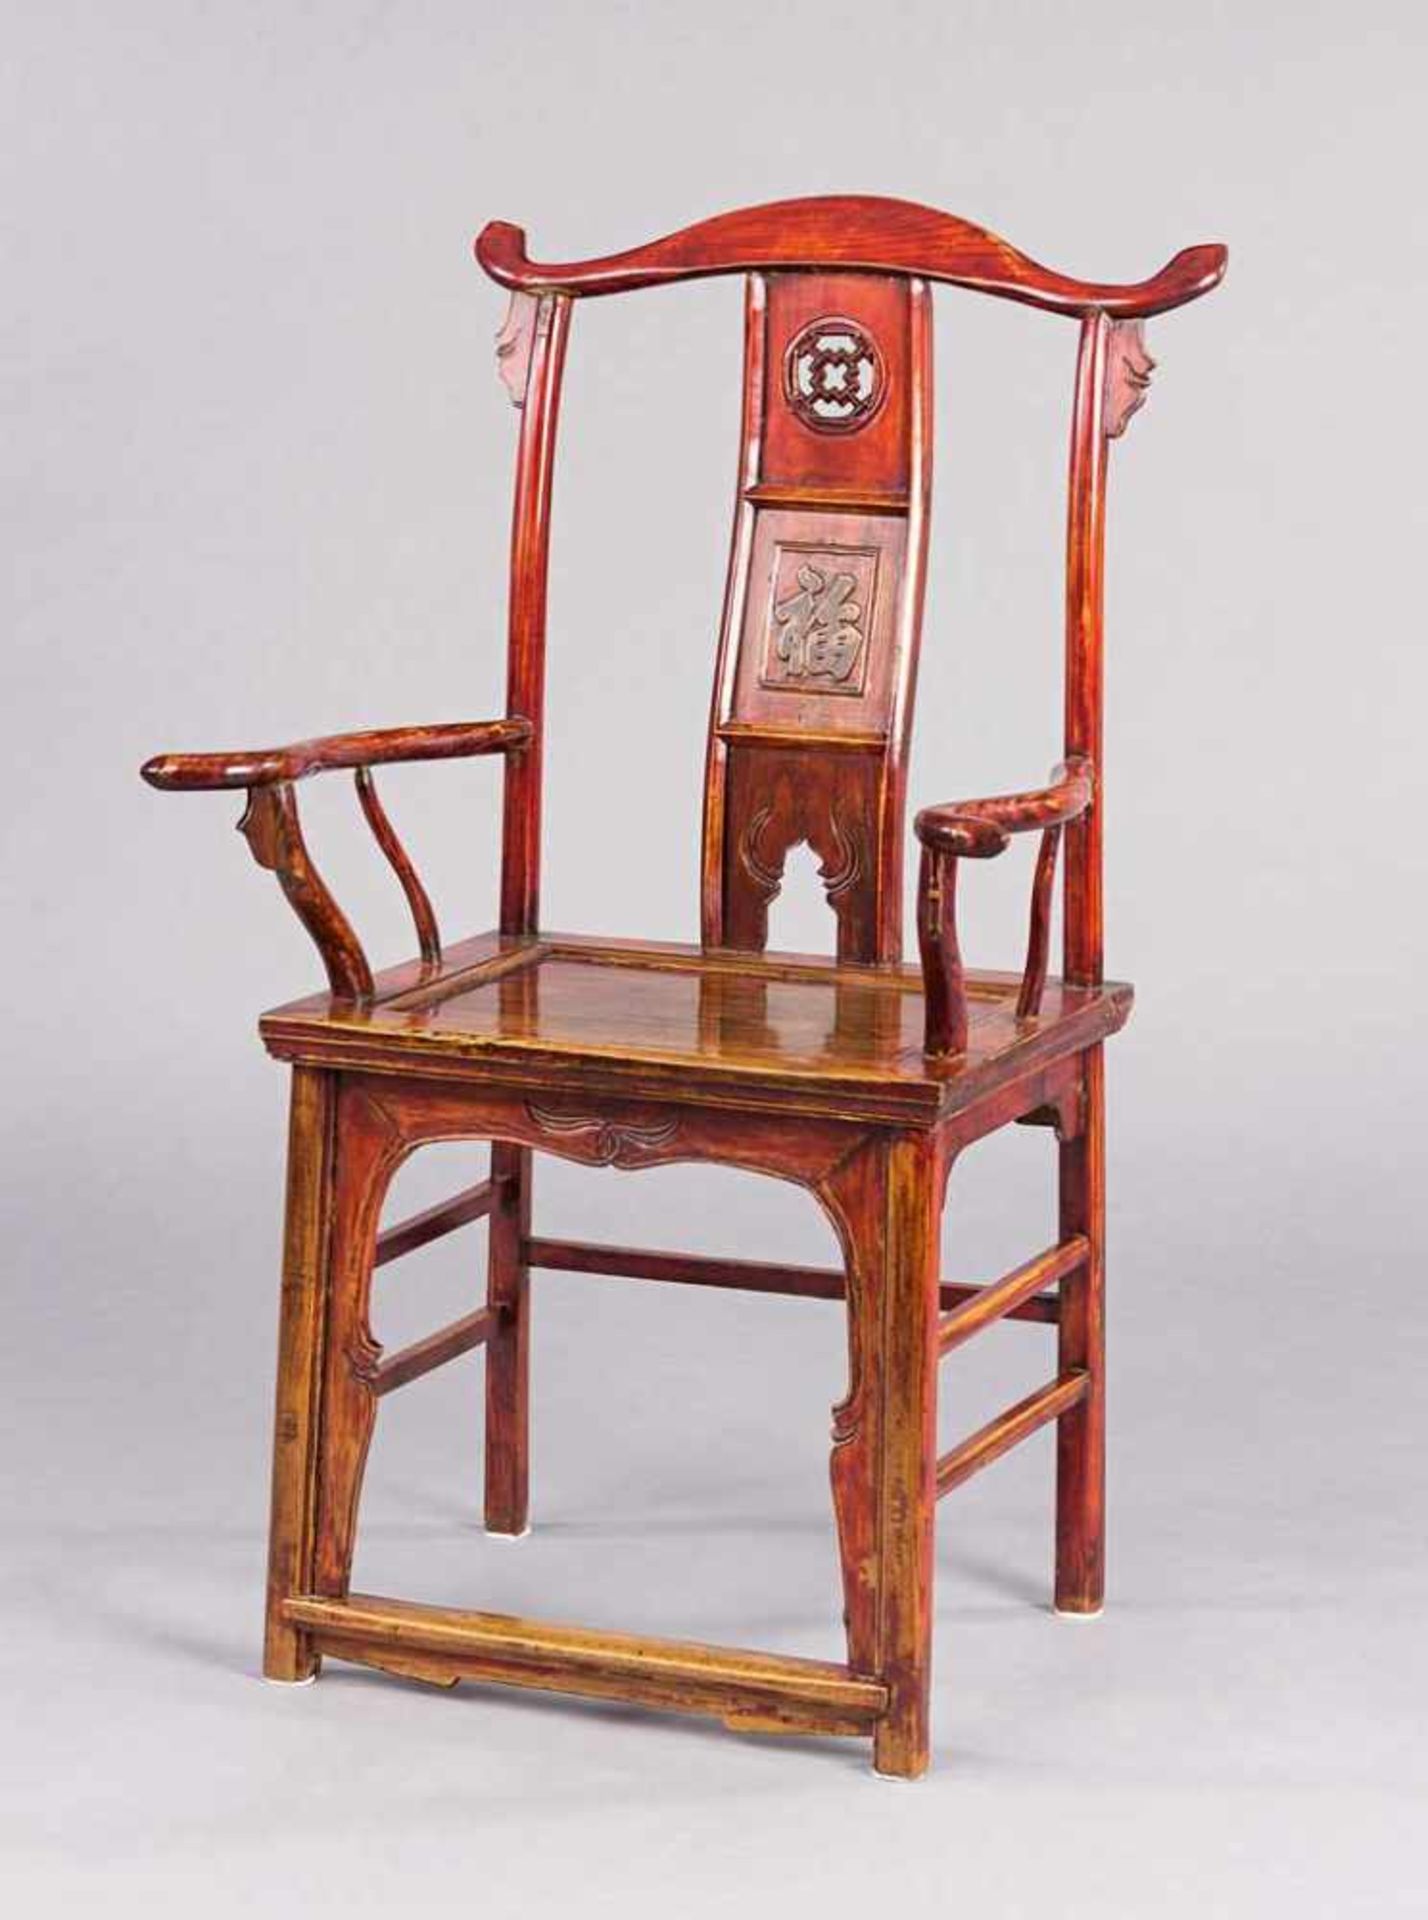 Chinesischer Armlehnstuhl. Verstrebung mit glückhaftem Zeichen. Brettsitz. Ulme. H 116 (55) cm